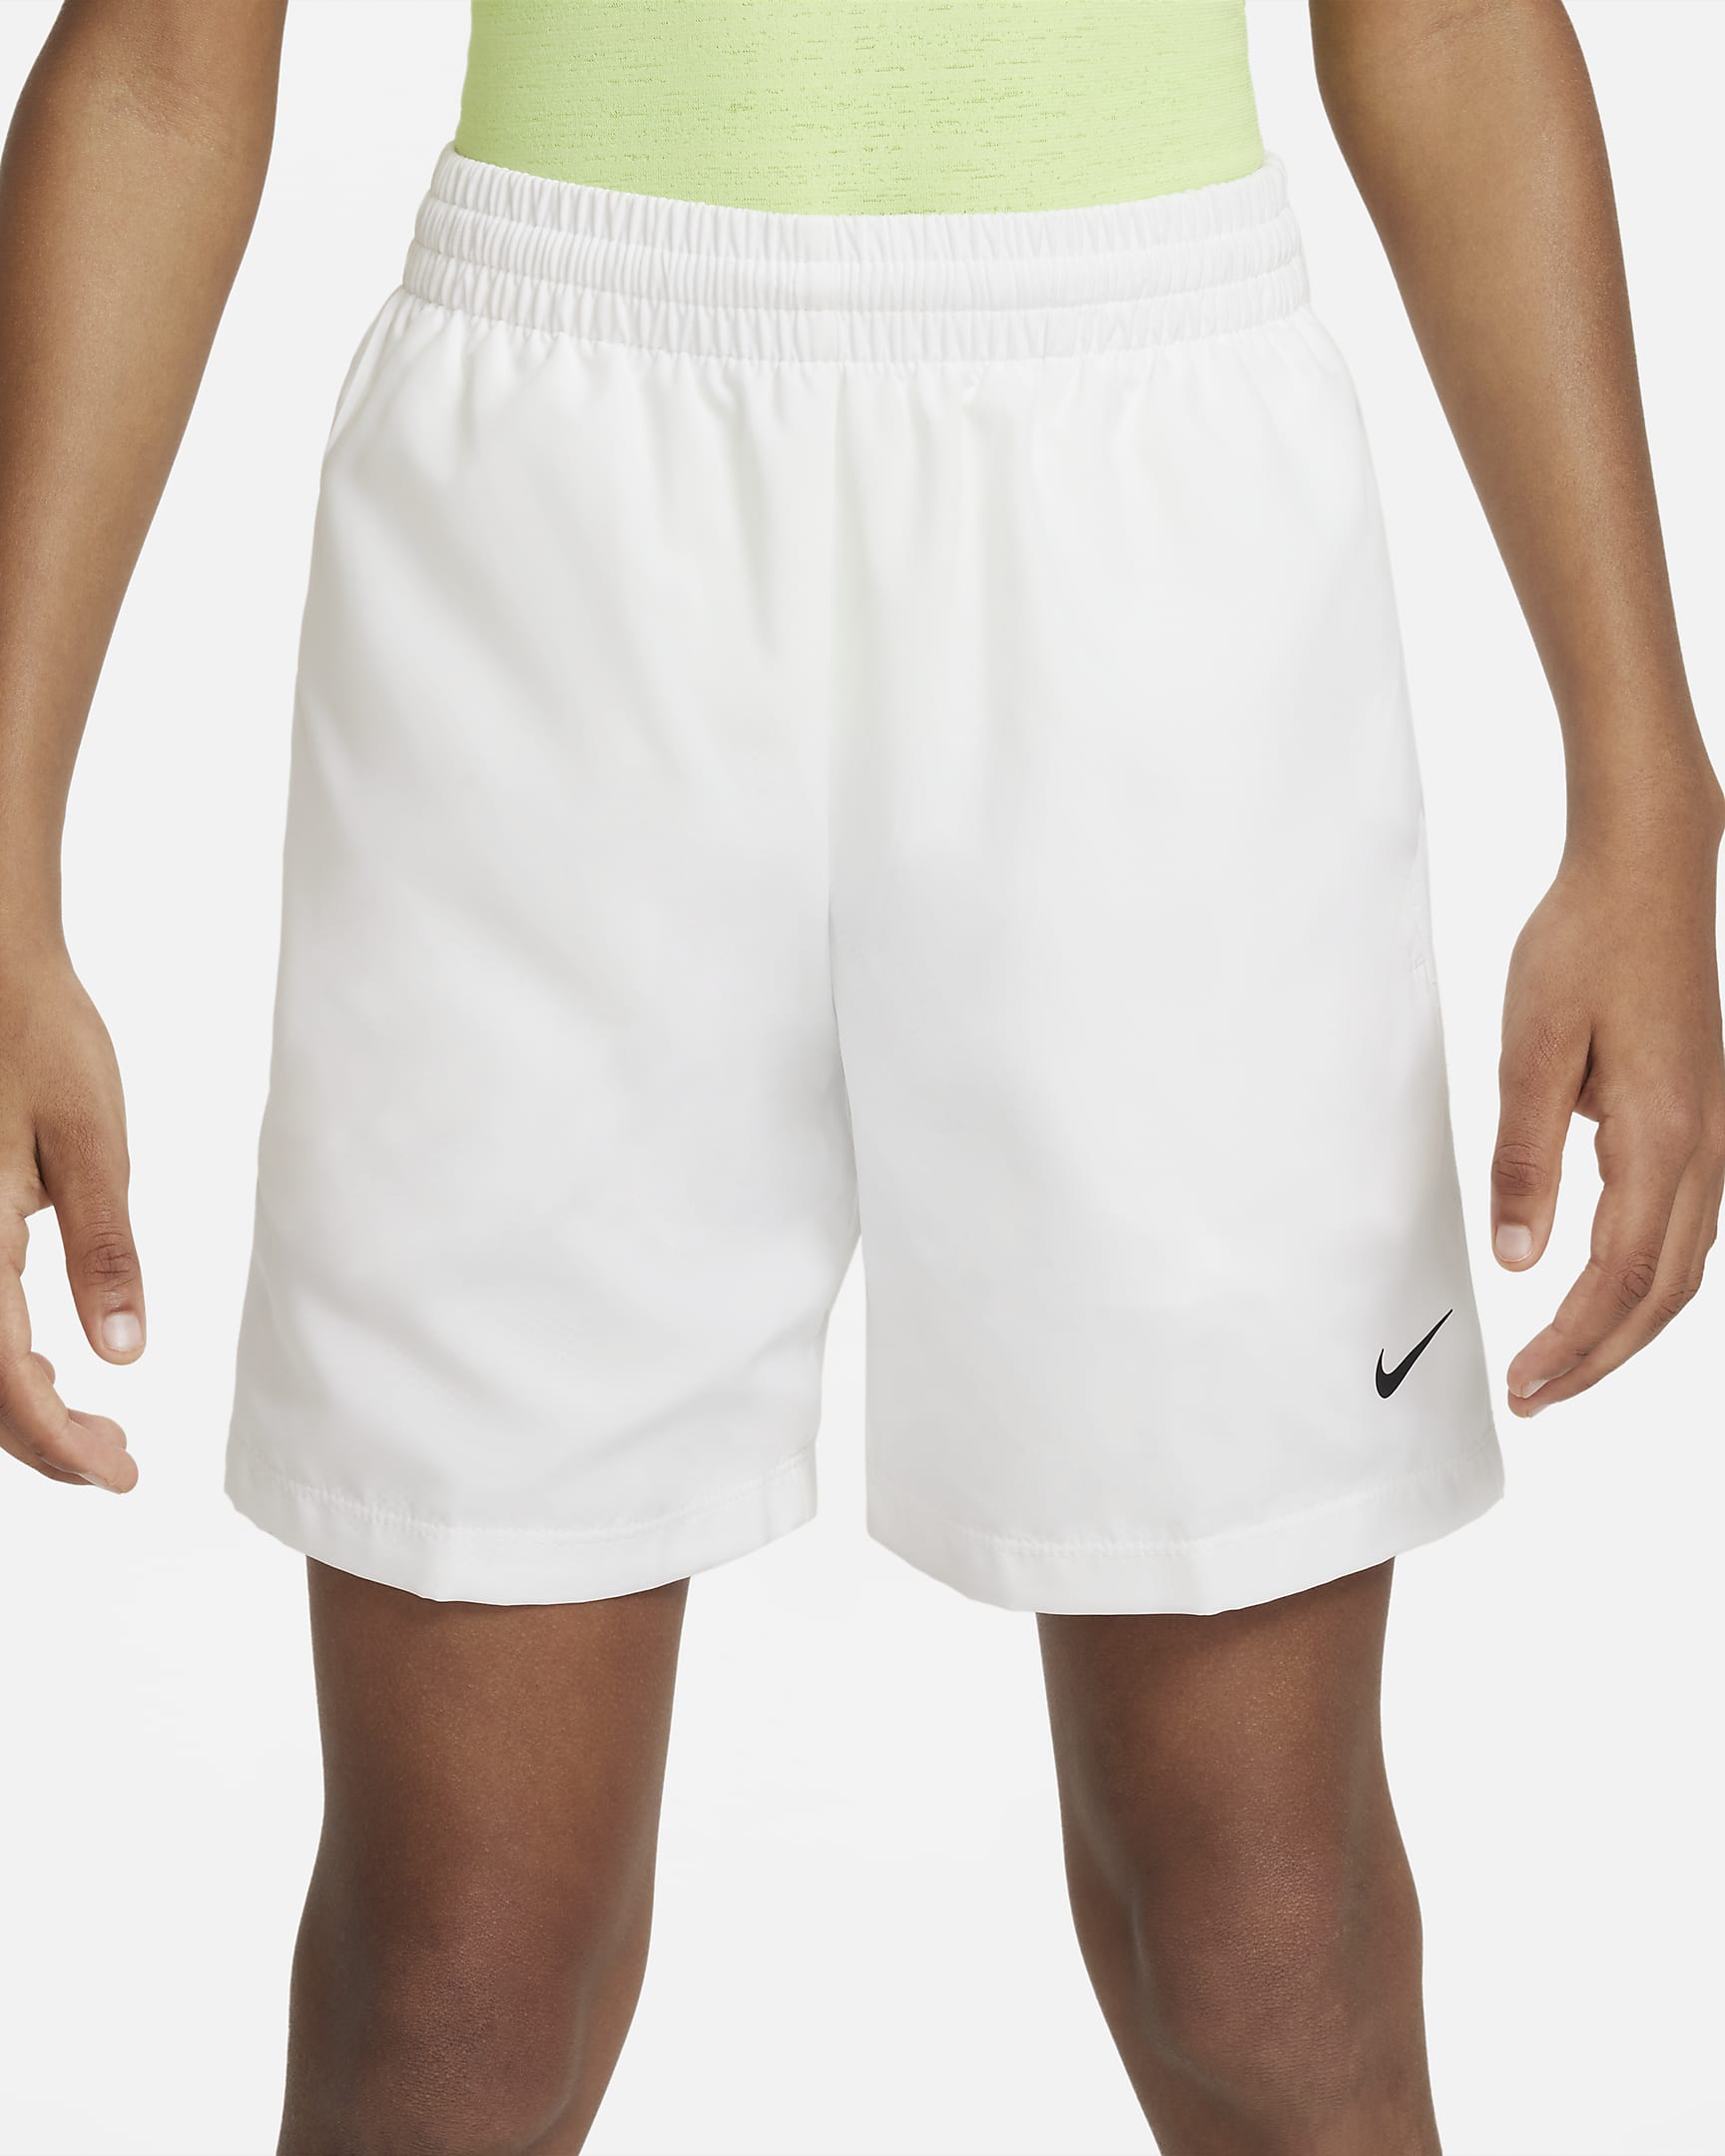 Nike Multi+ Dri-FIT Trainingsshorts für ältere Kinder (Jungen) - Weiß/Schwarz